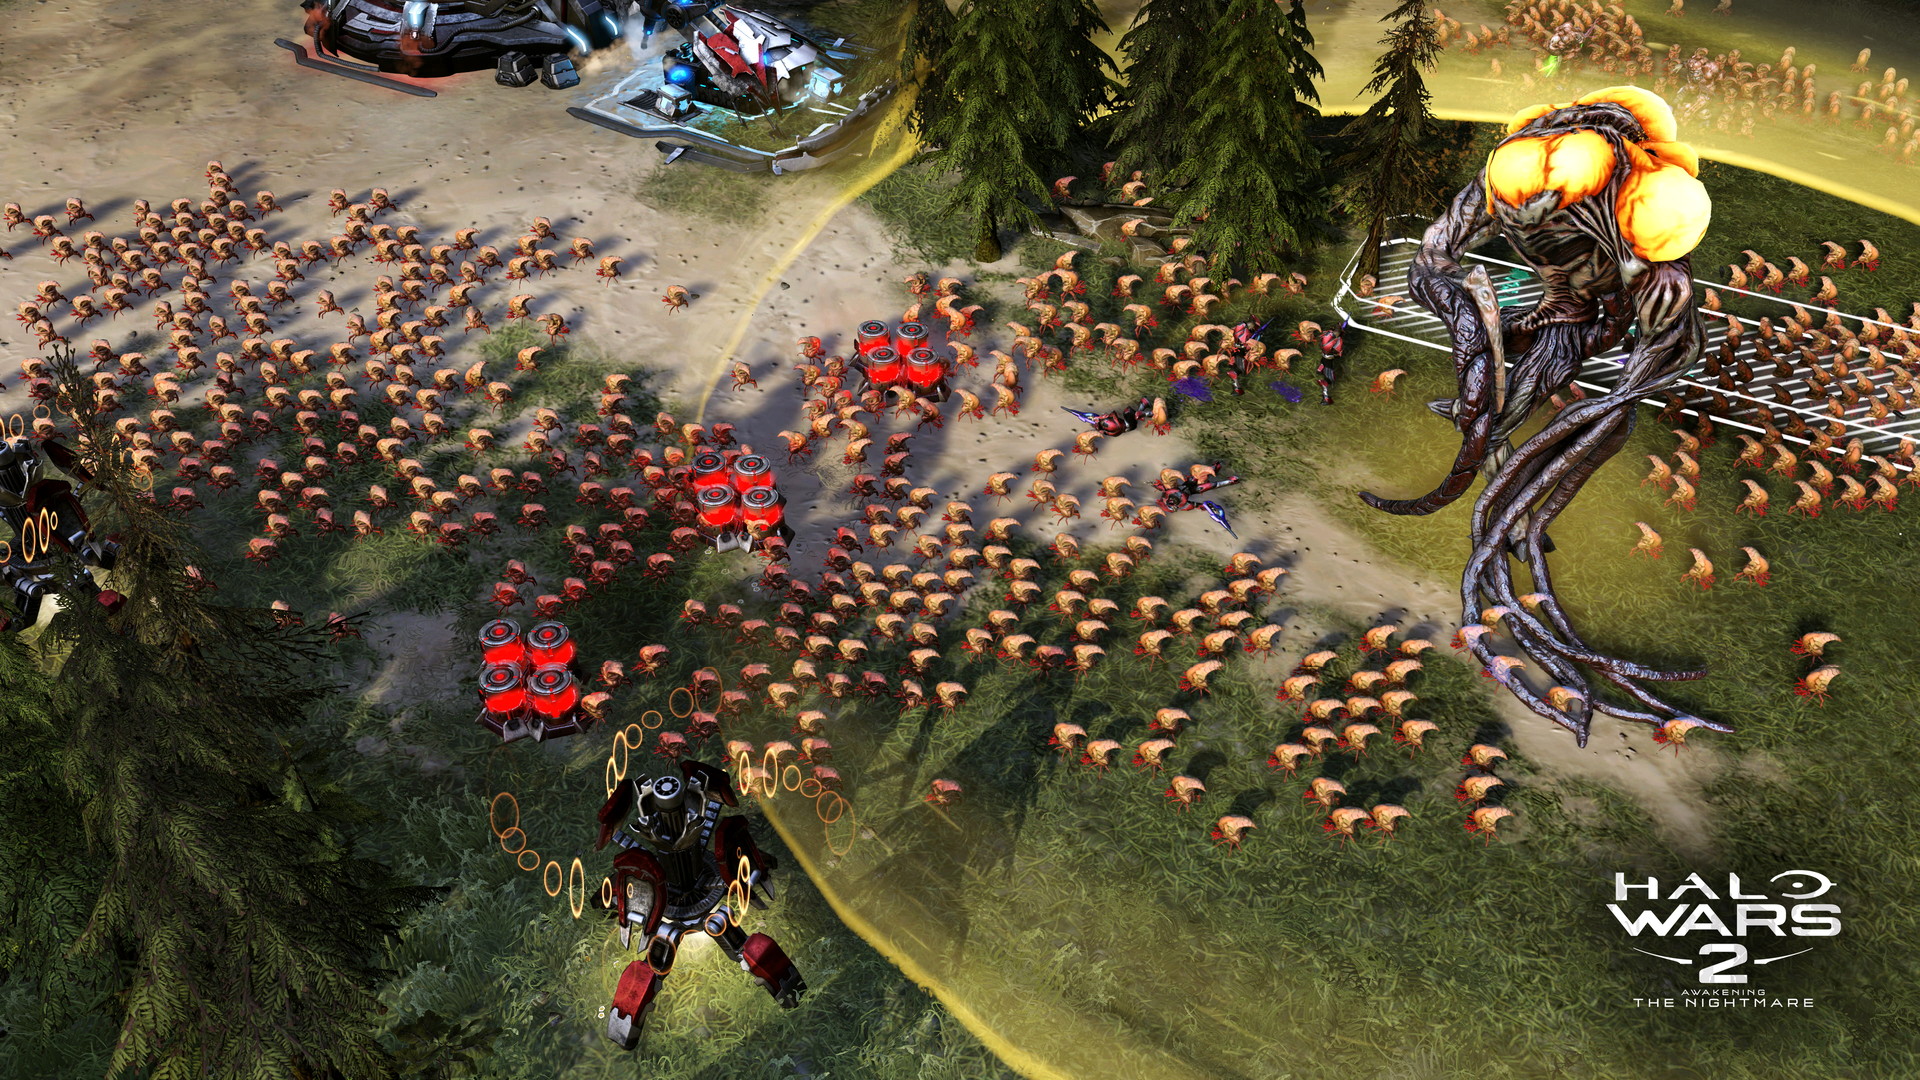 Halo Wars 2: Awakening the Nightmare - screenshot 5